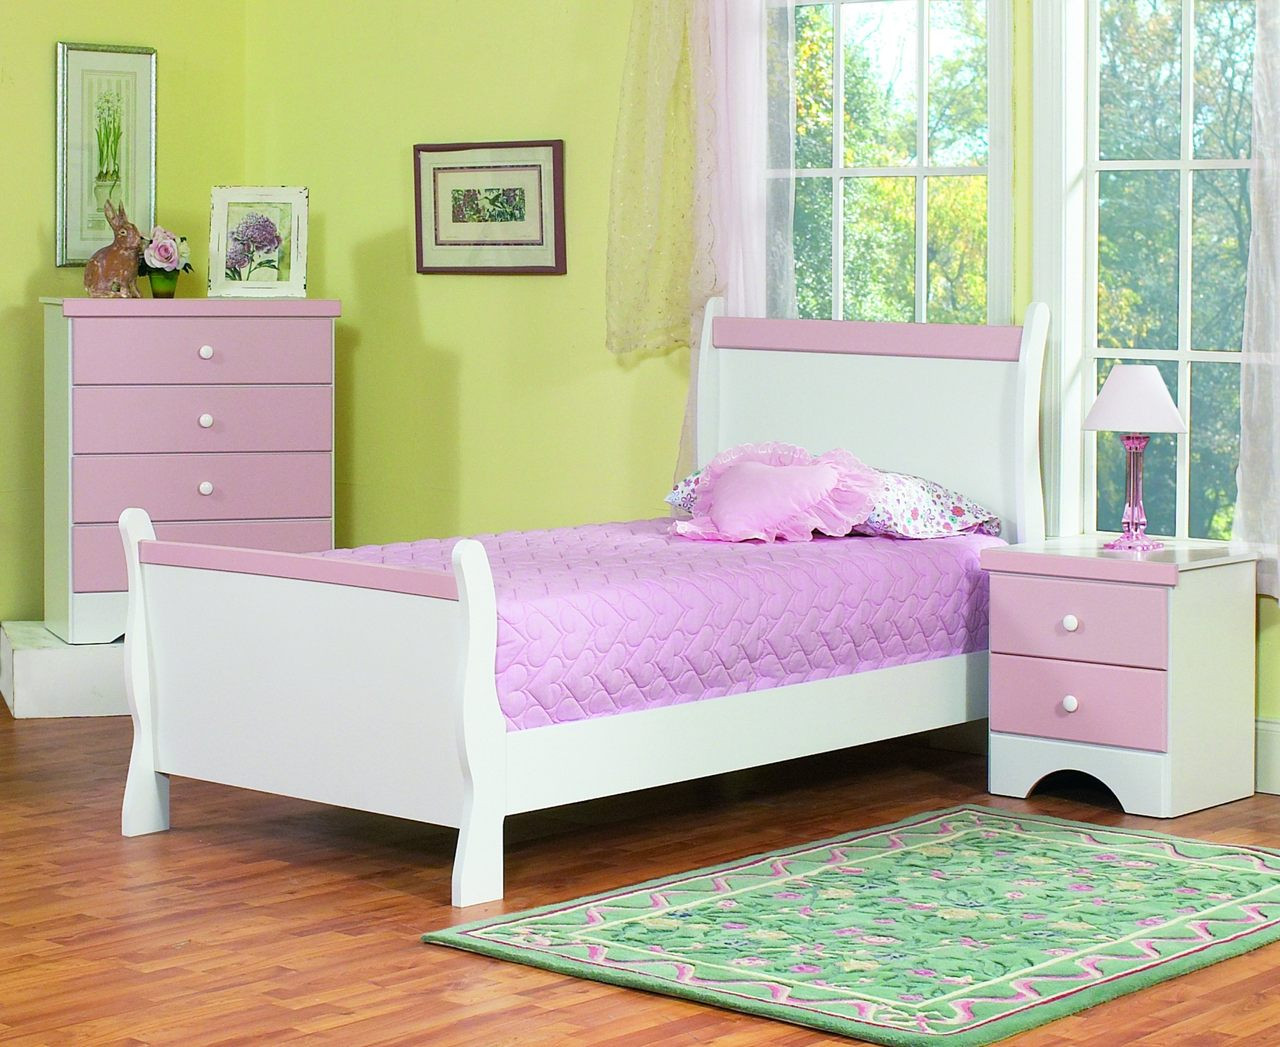 Kids Bedroom Sets
 The Captivating Kids Bedroom Furniture Amaza Design